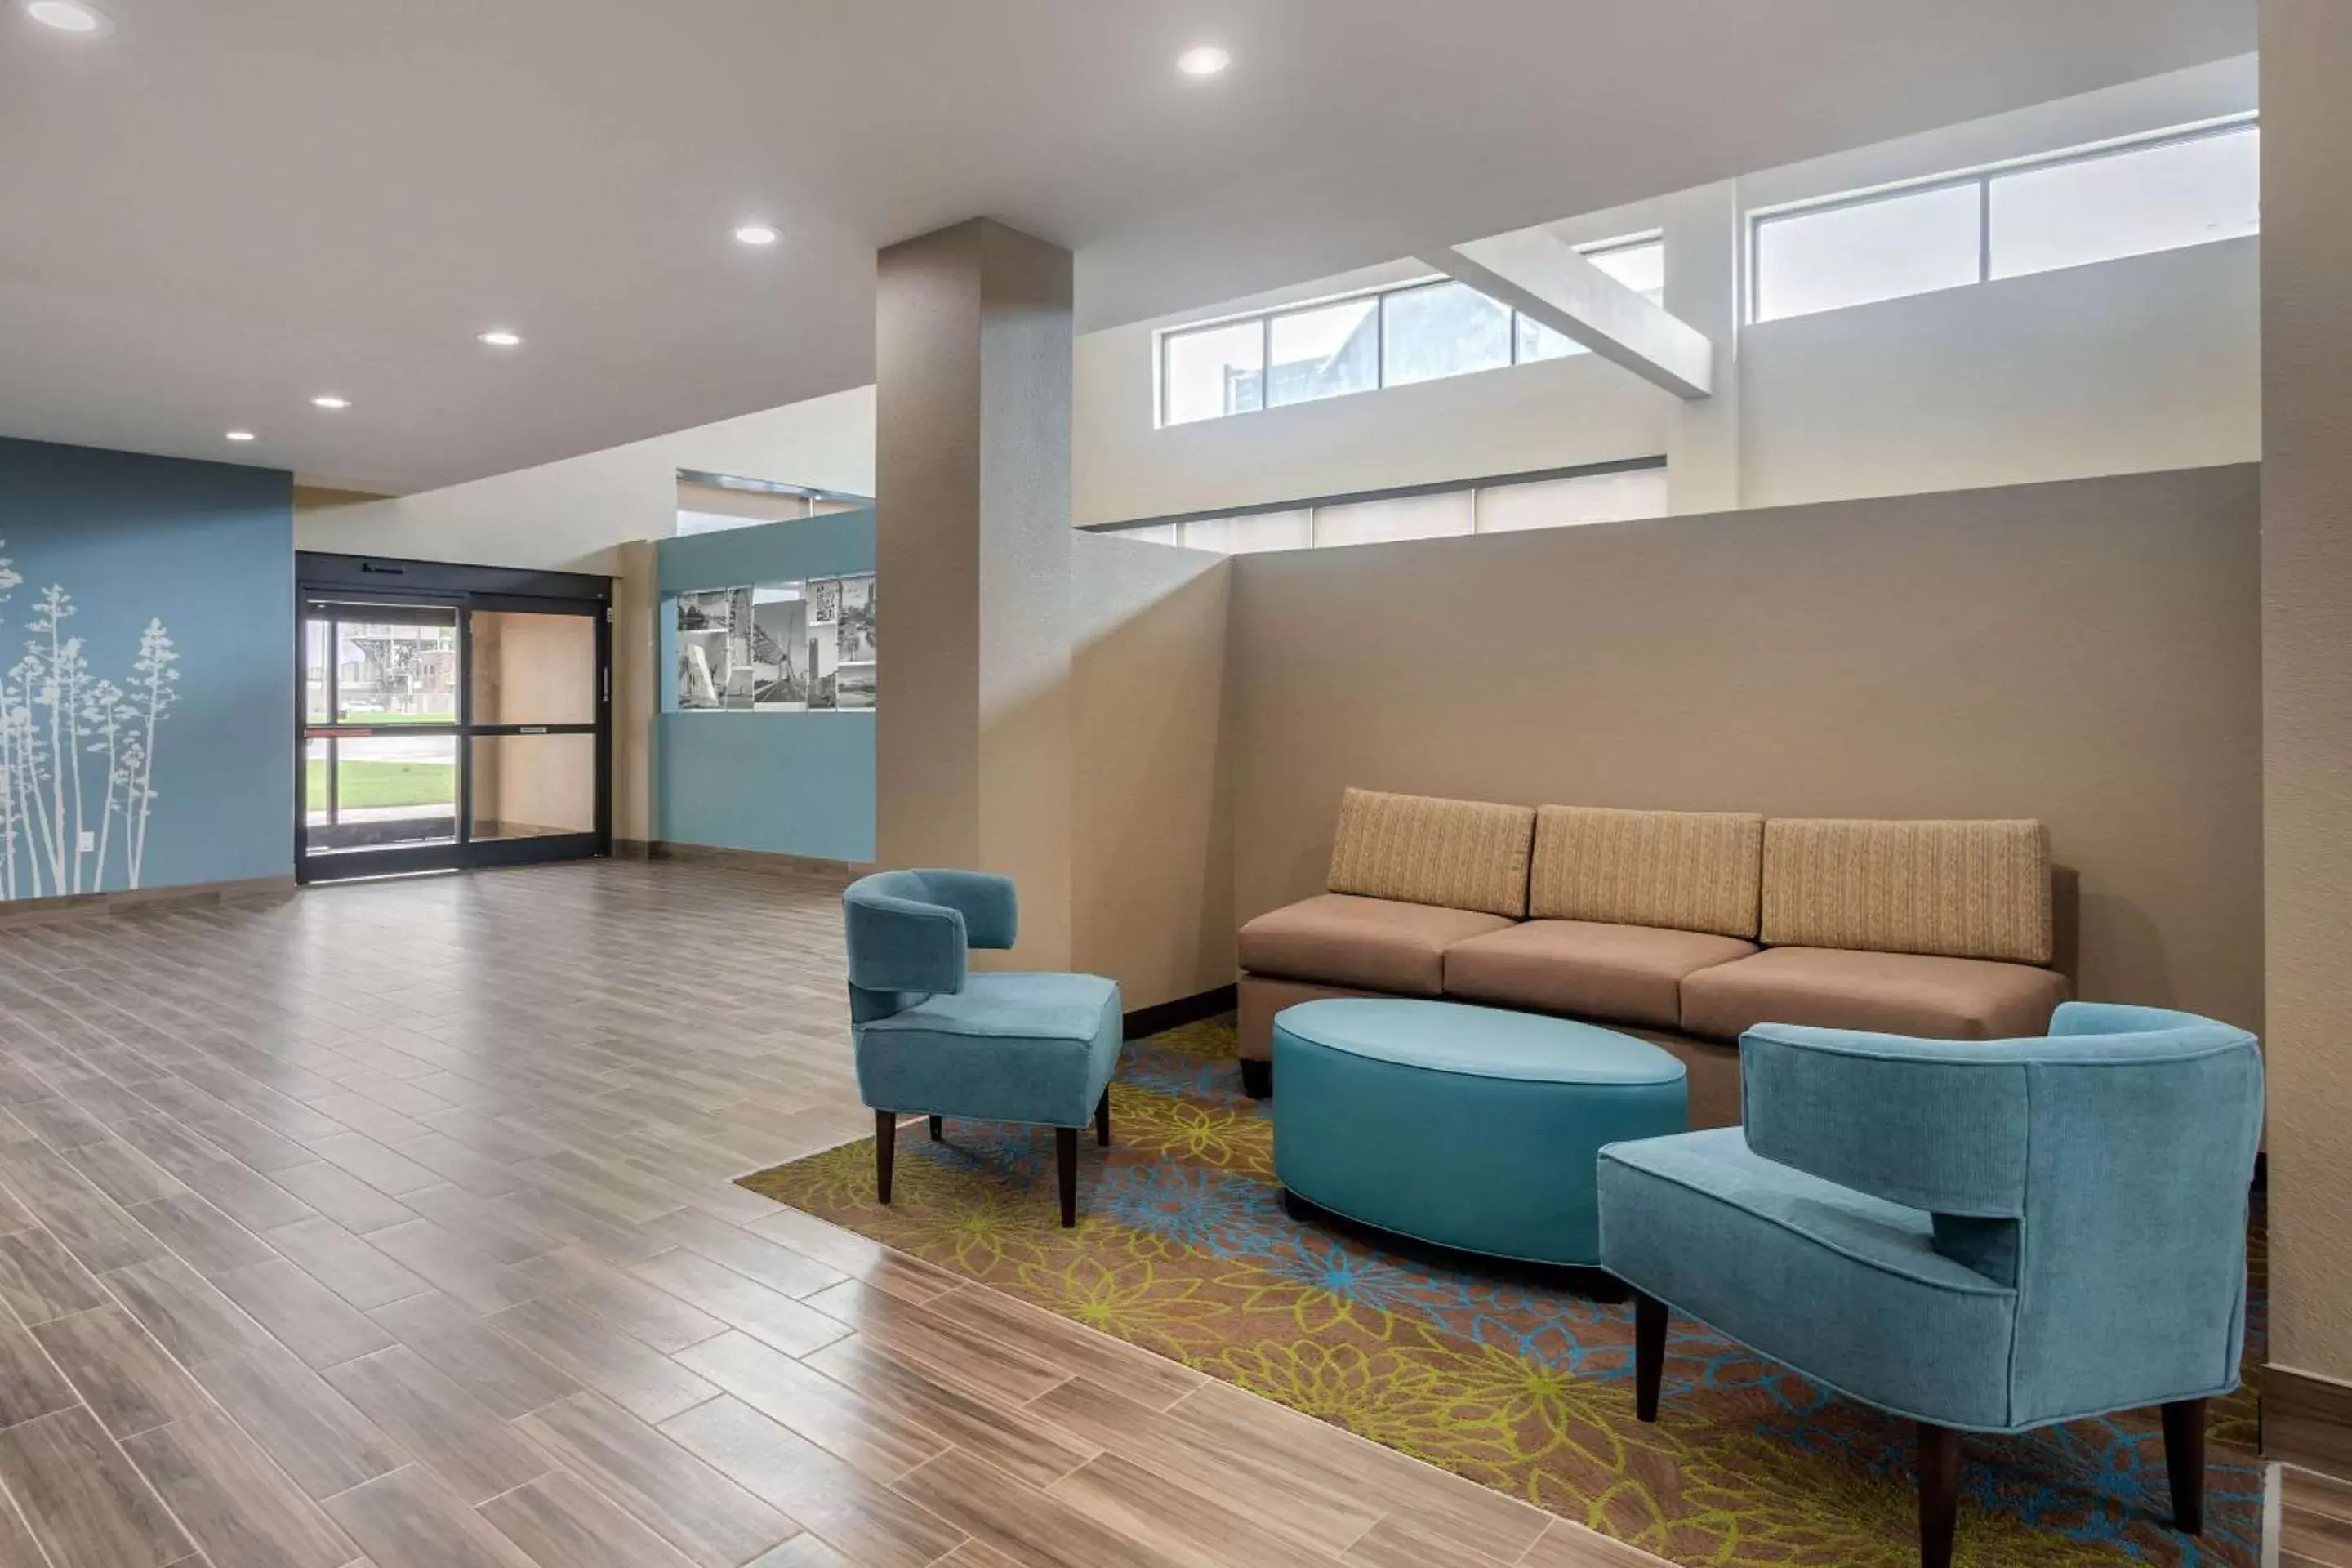 Lobby or reception, Lobby/Reception in Sleep Inn & Suites Bricktown - near Medical Center